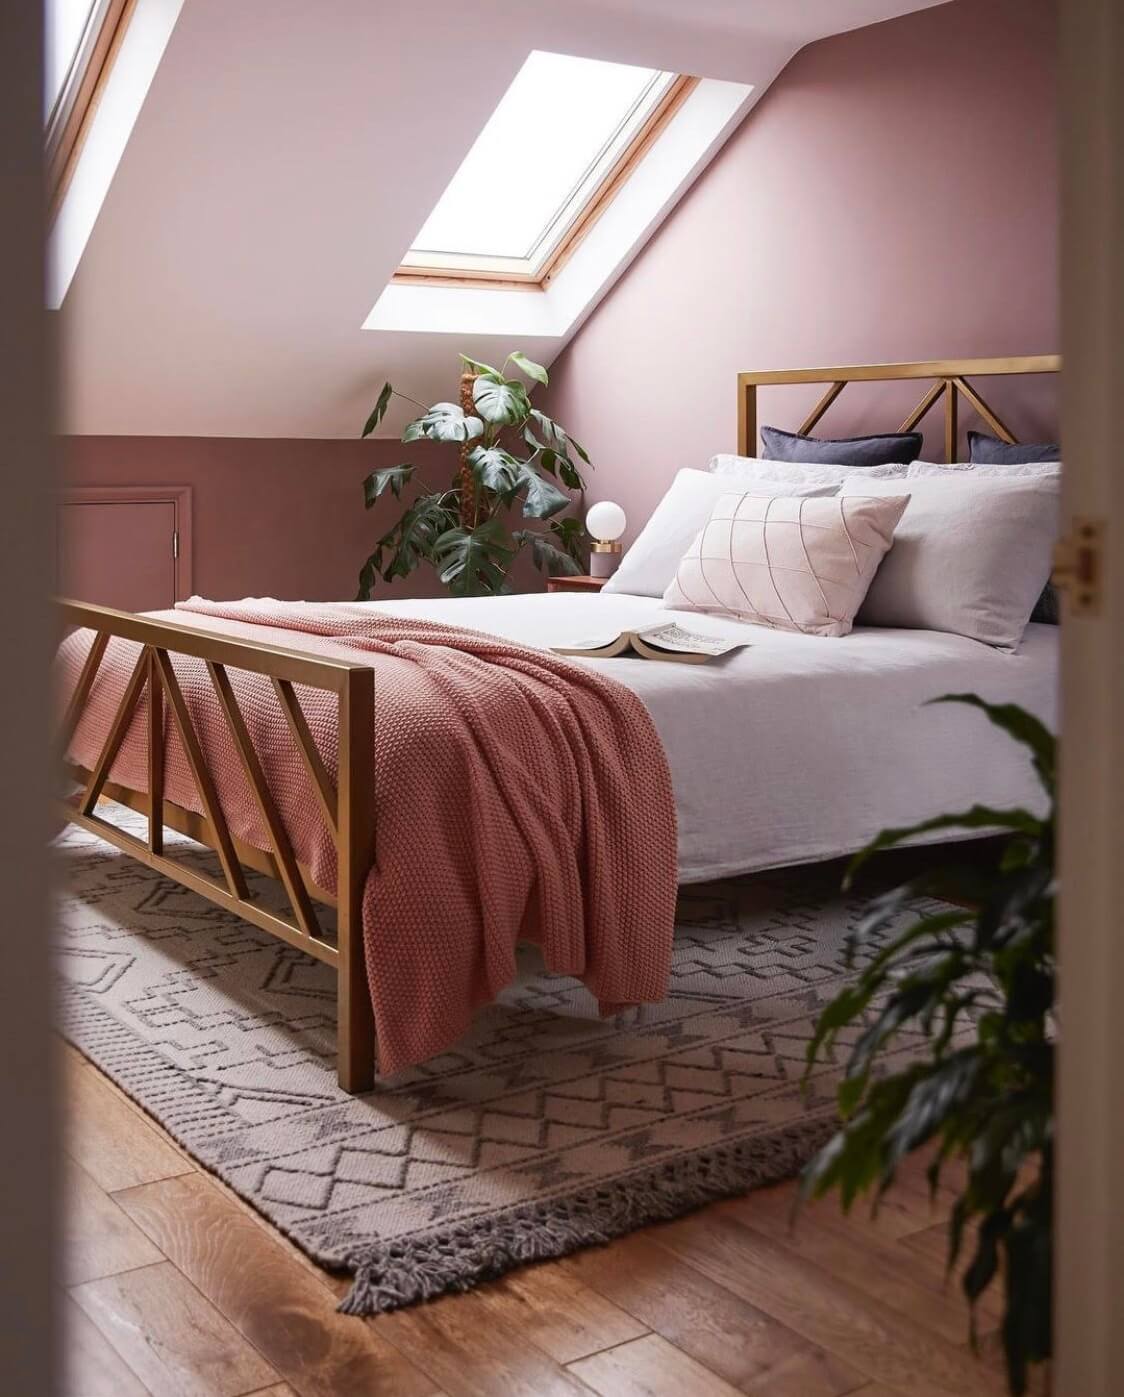 угрюмая-комната-розовый-поросенок-мяч-чердак-спальня-наклонный-потолок-теплые-спальня-цвета-нордрум